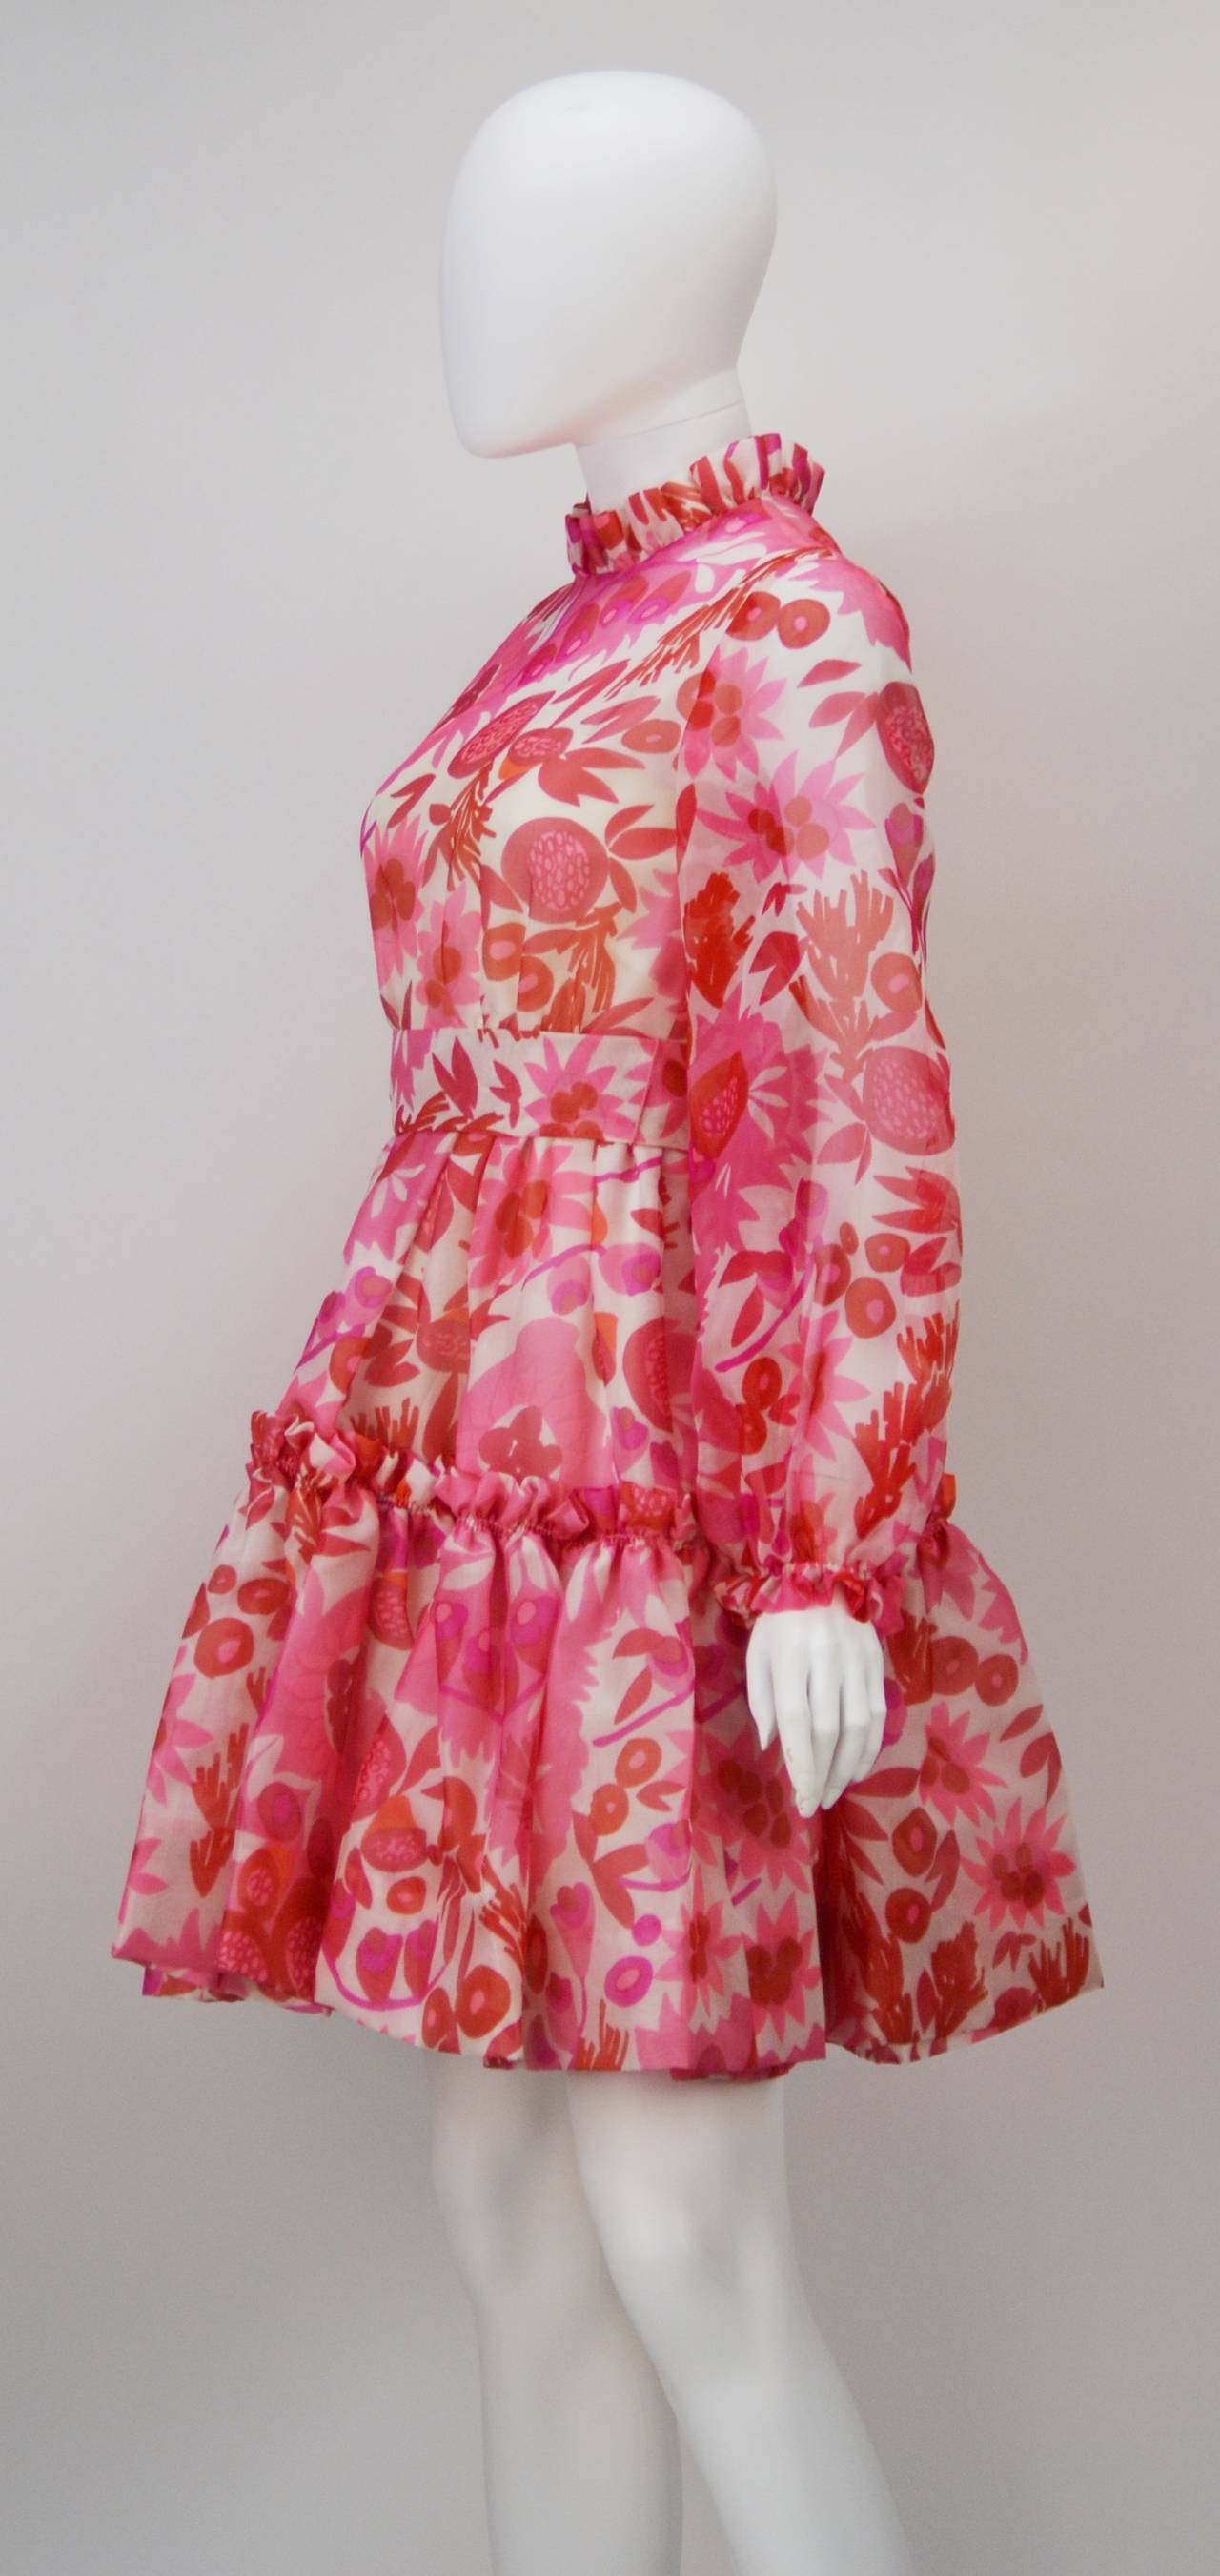 Vivid Minikleid von Mollie Parnis, 1960er Jahre (Pink)